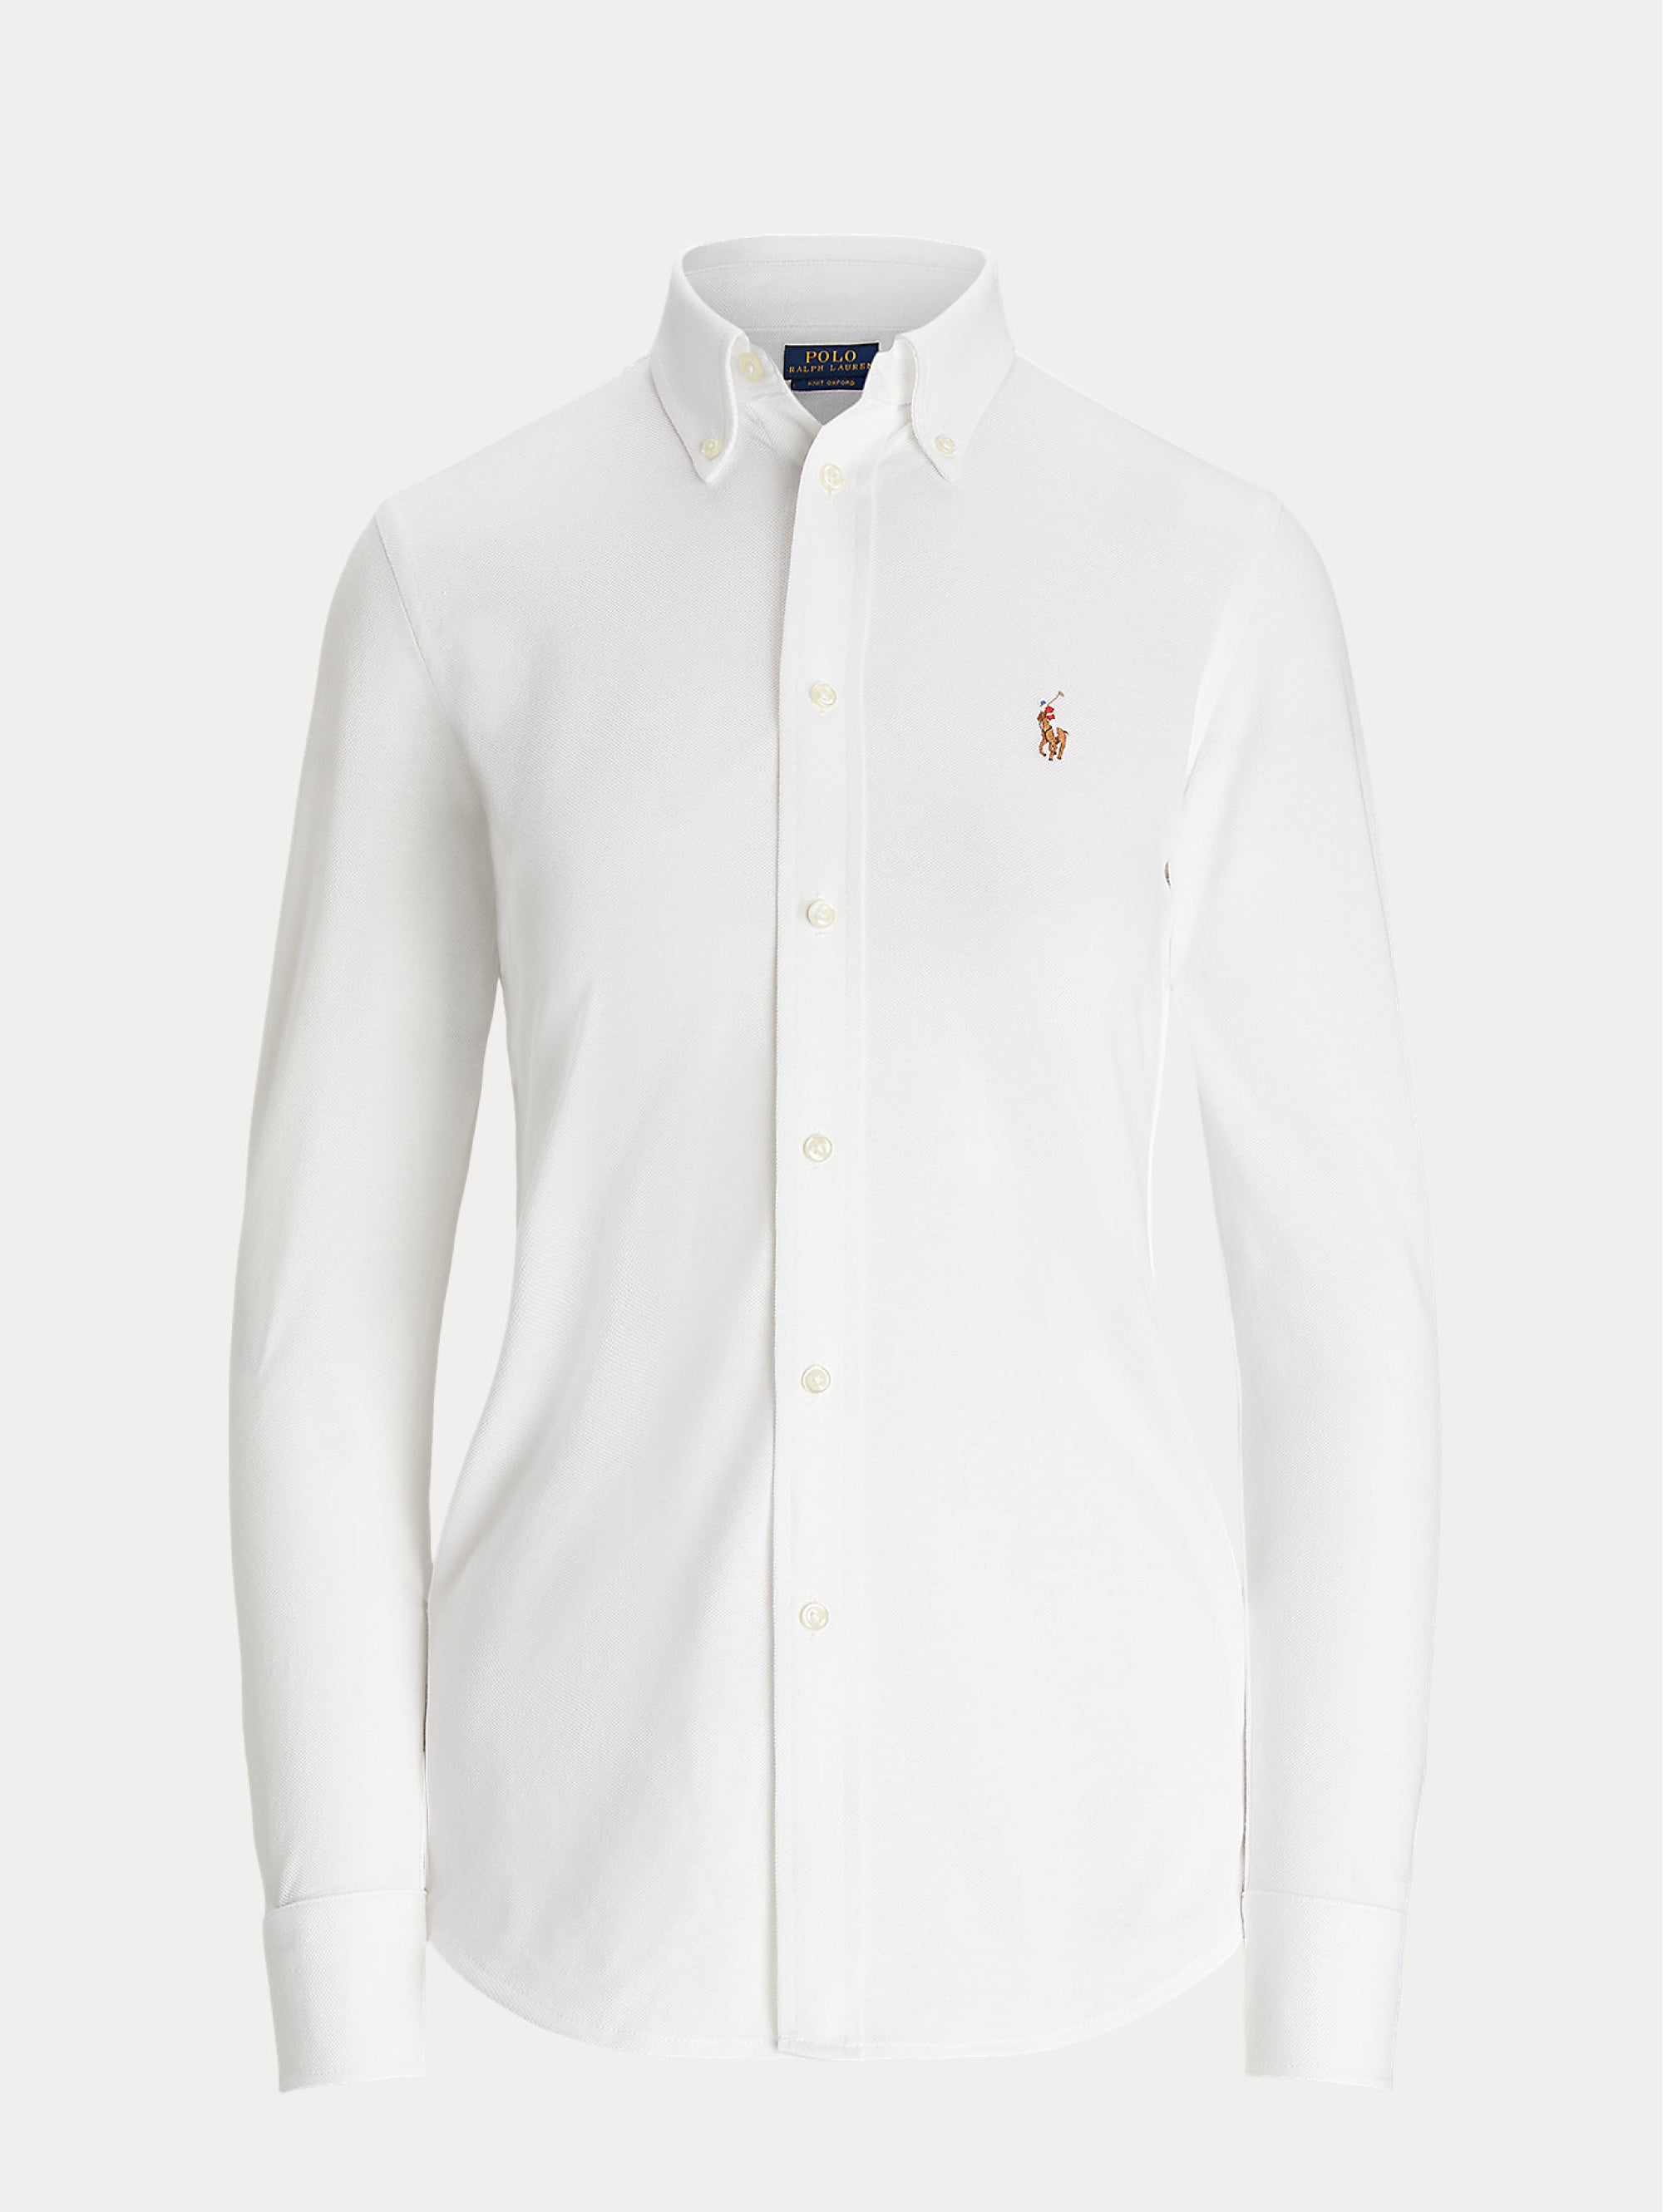 White Oxford Knit Shirt